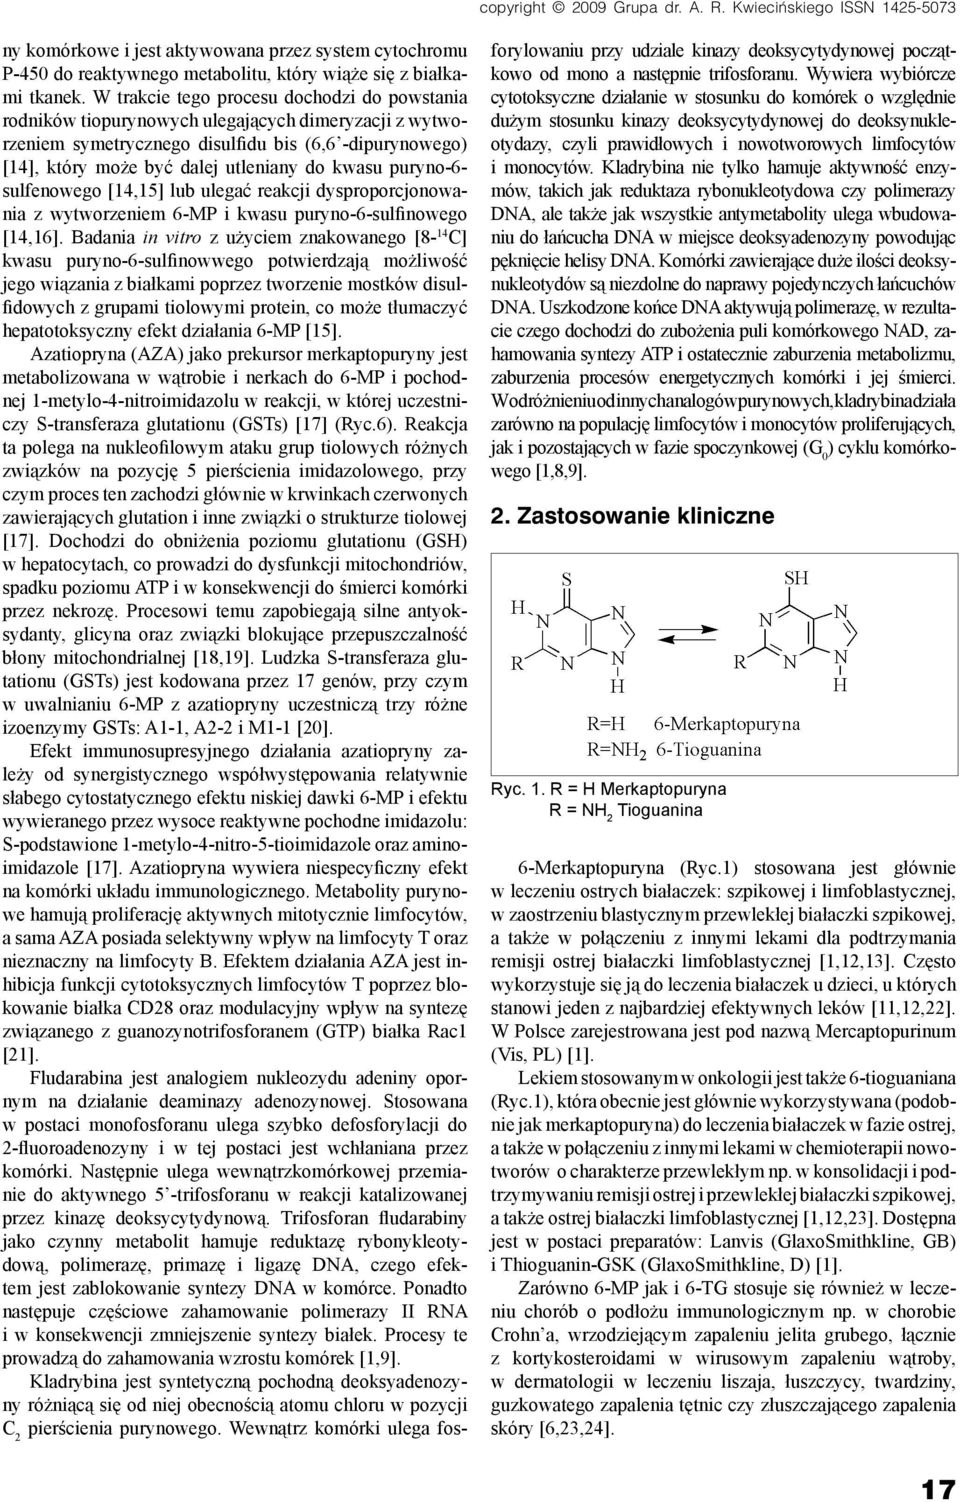 kwasu puryno-6- sulfenowego [14,15] lub ulegać reakcji dysproporcjonowania z wytworzeniem 6-MP i kwasu puryno-6-sulfinowego [14,16].